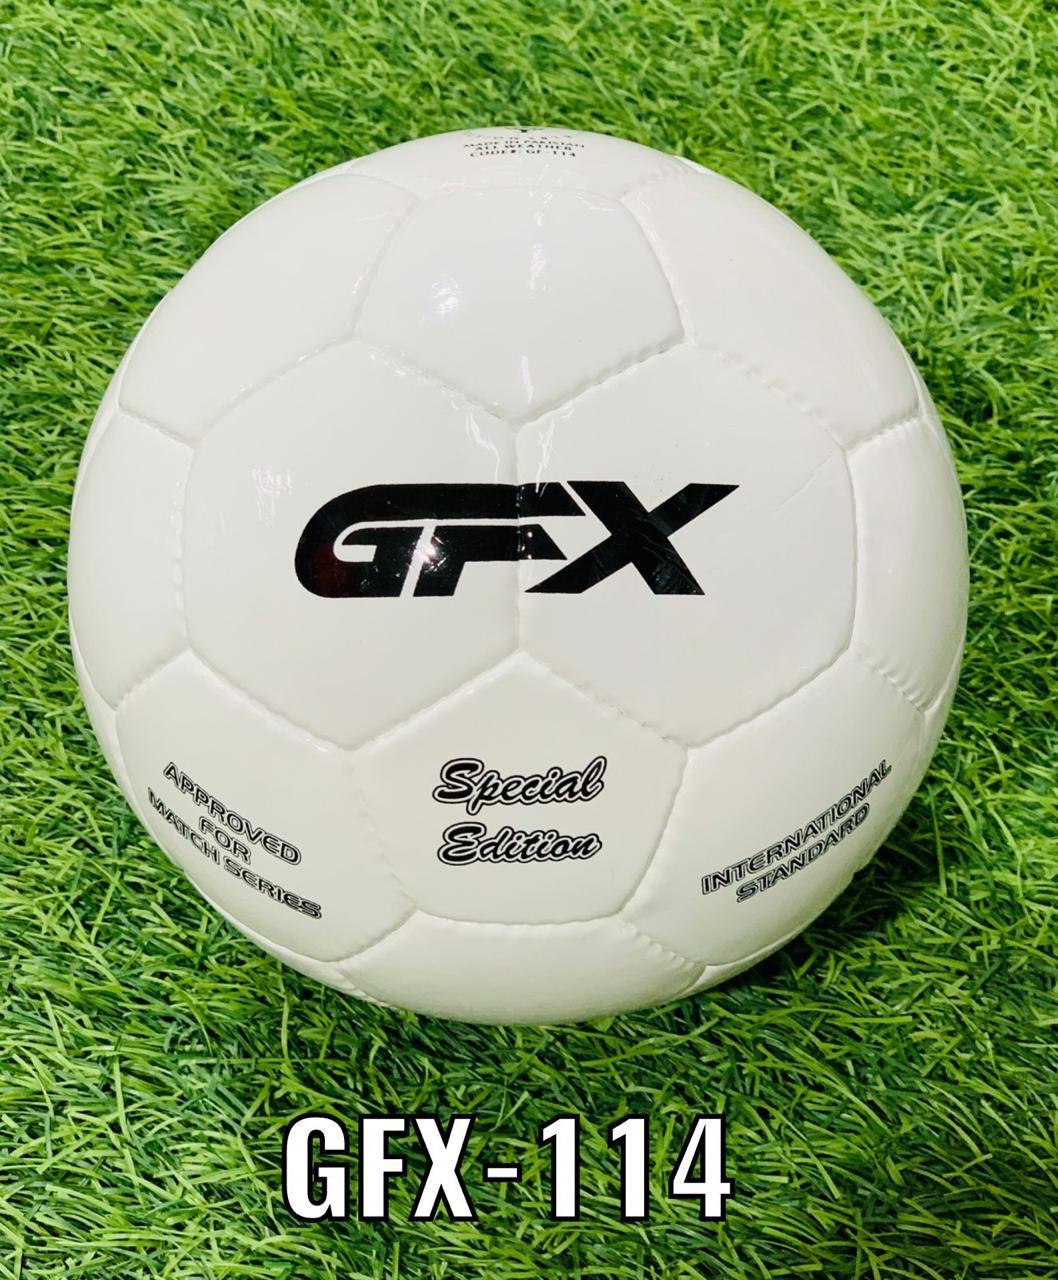 Футбольный мяч 5 GFX